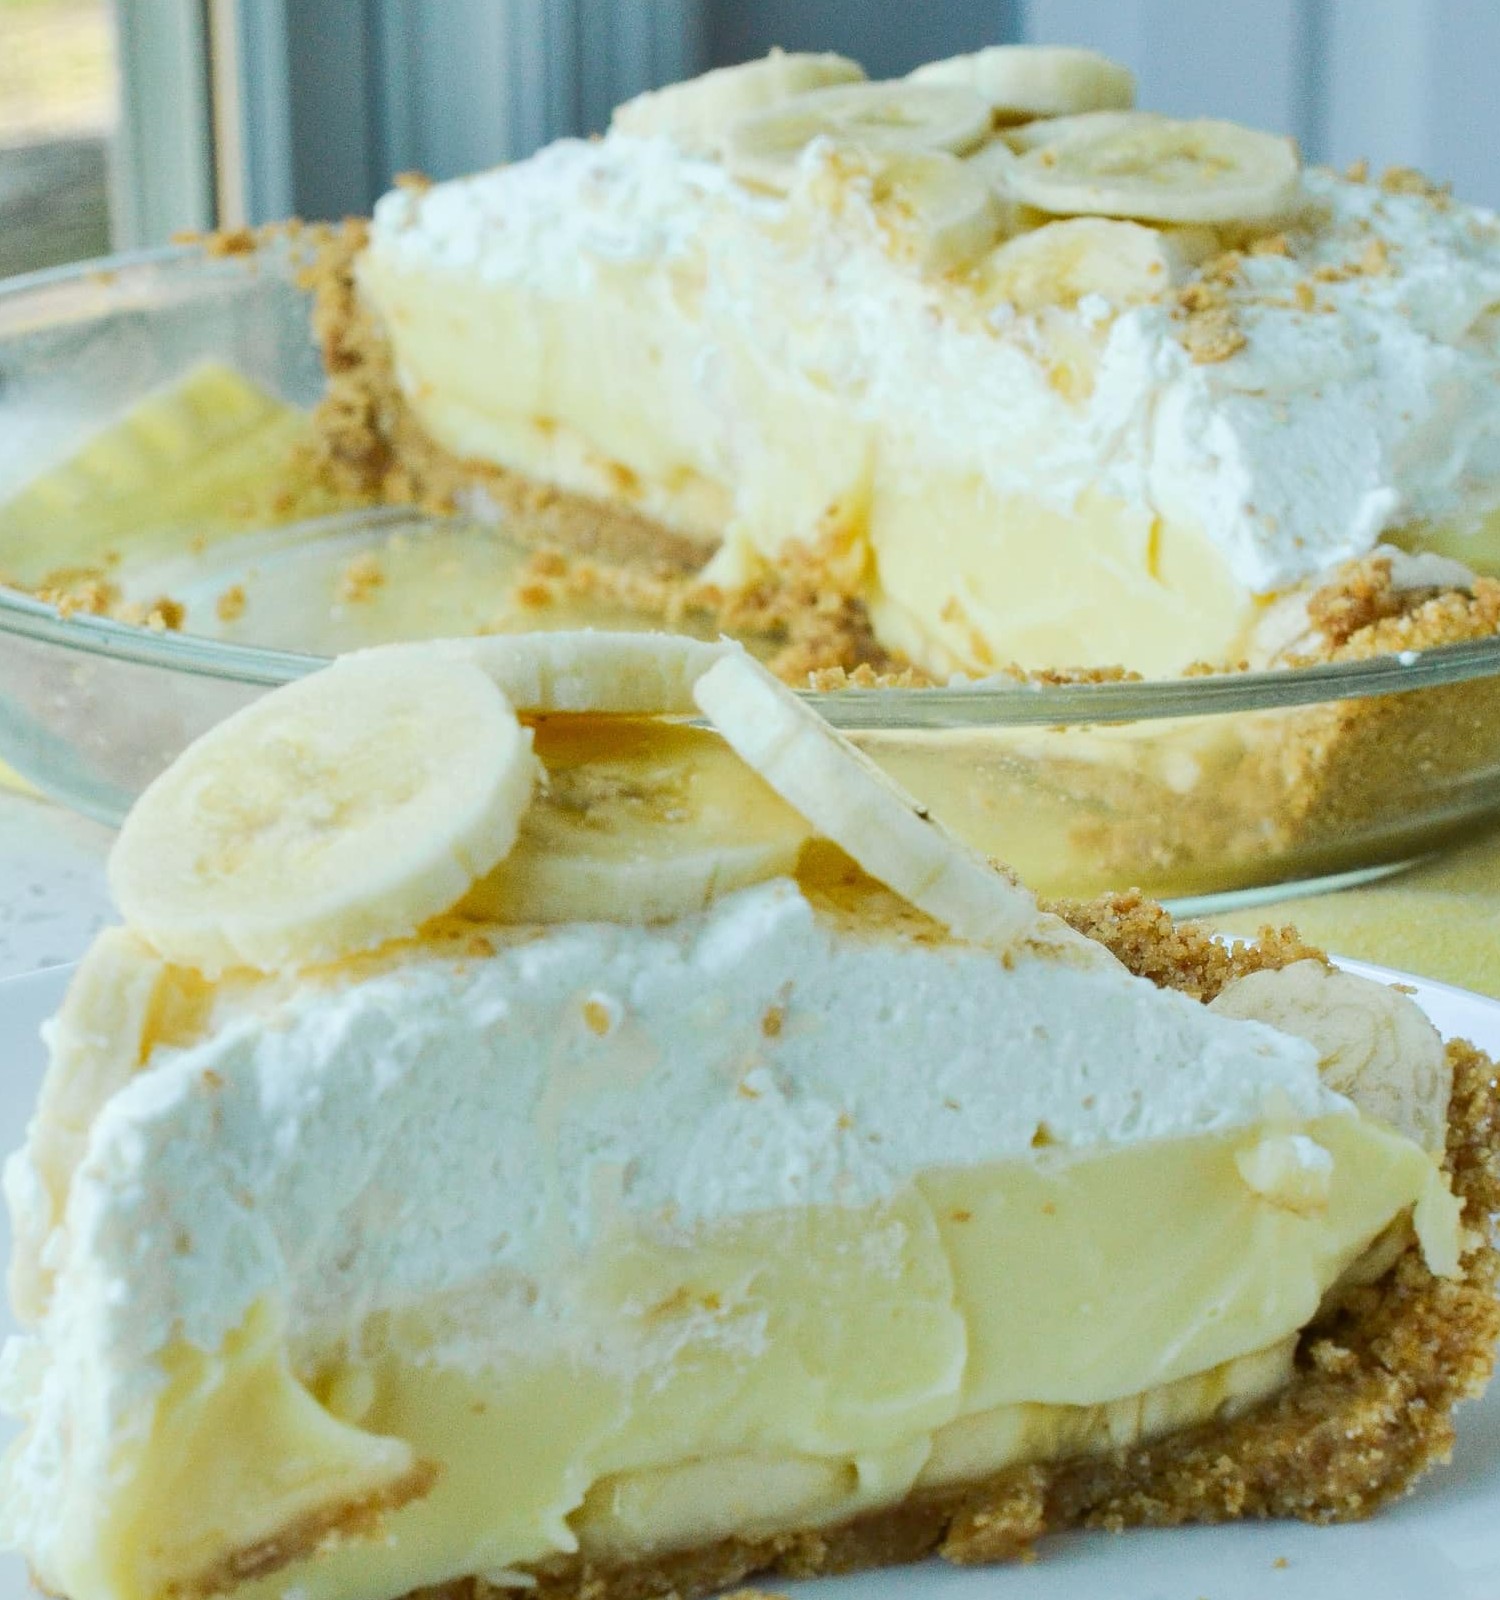 Homemade Banana Cream Pie new york times recipes